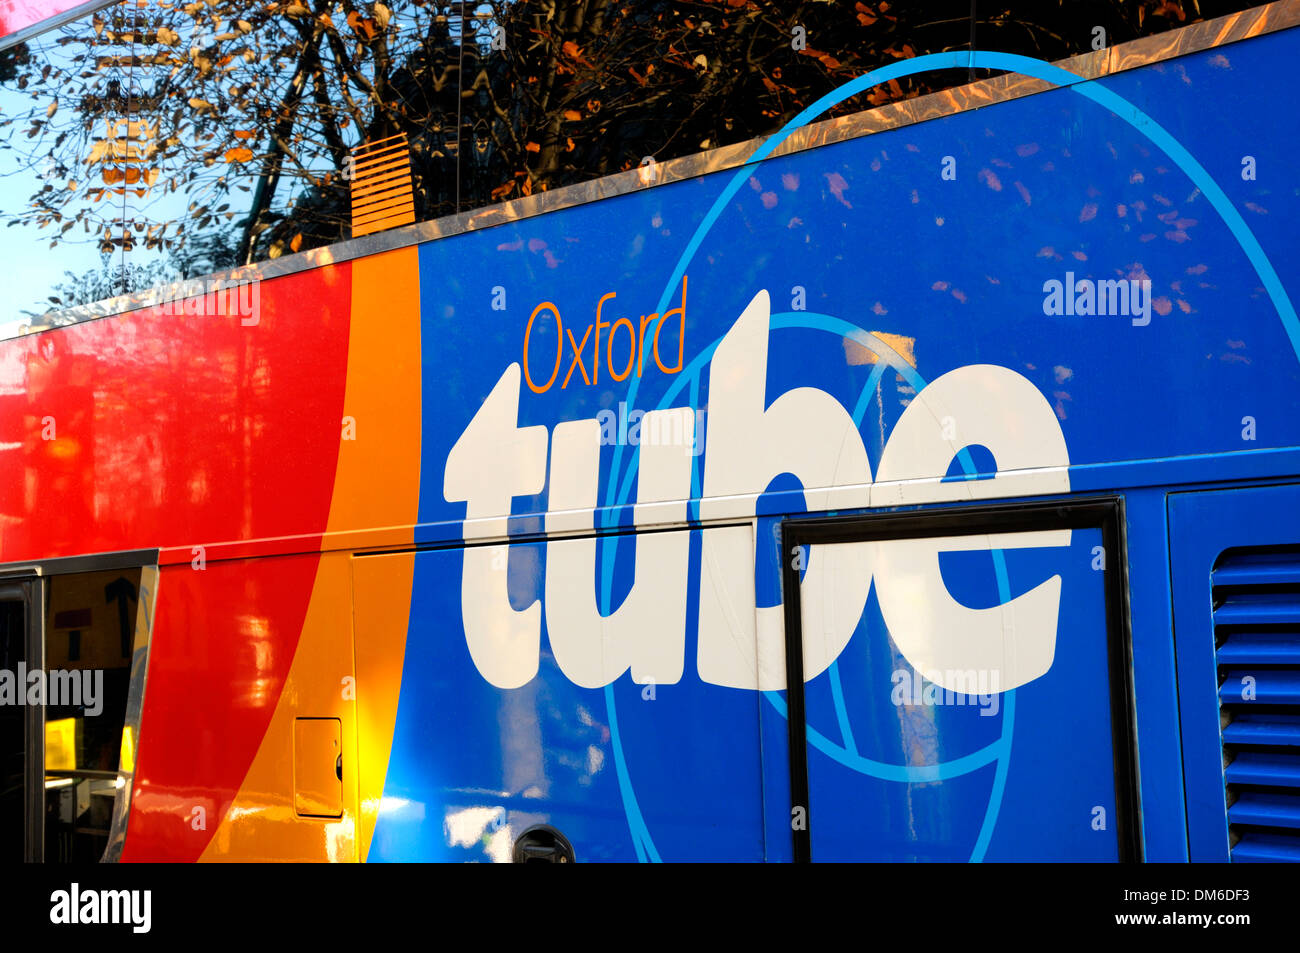 Londres, Angleterre, Royaume-Uni. Tube Oxford Bus - bus express entre Londres et Oxford Banque D'Images